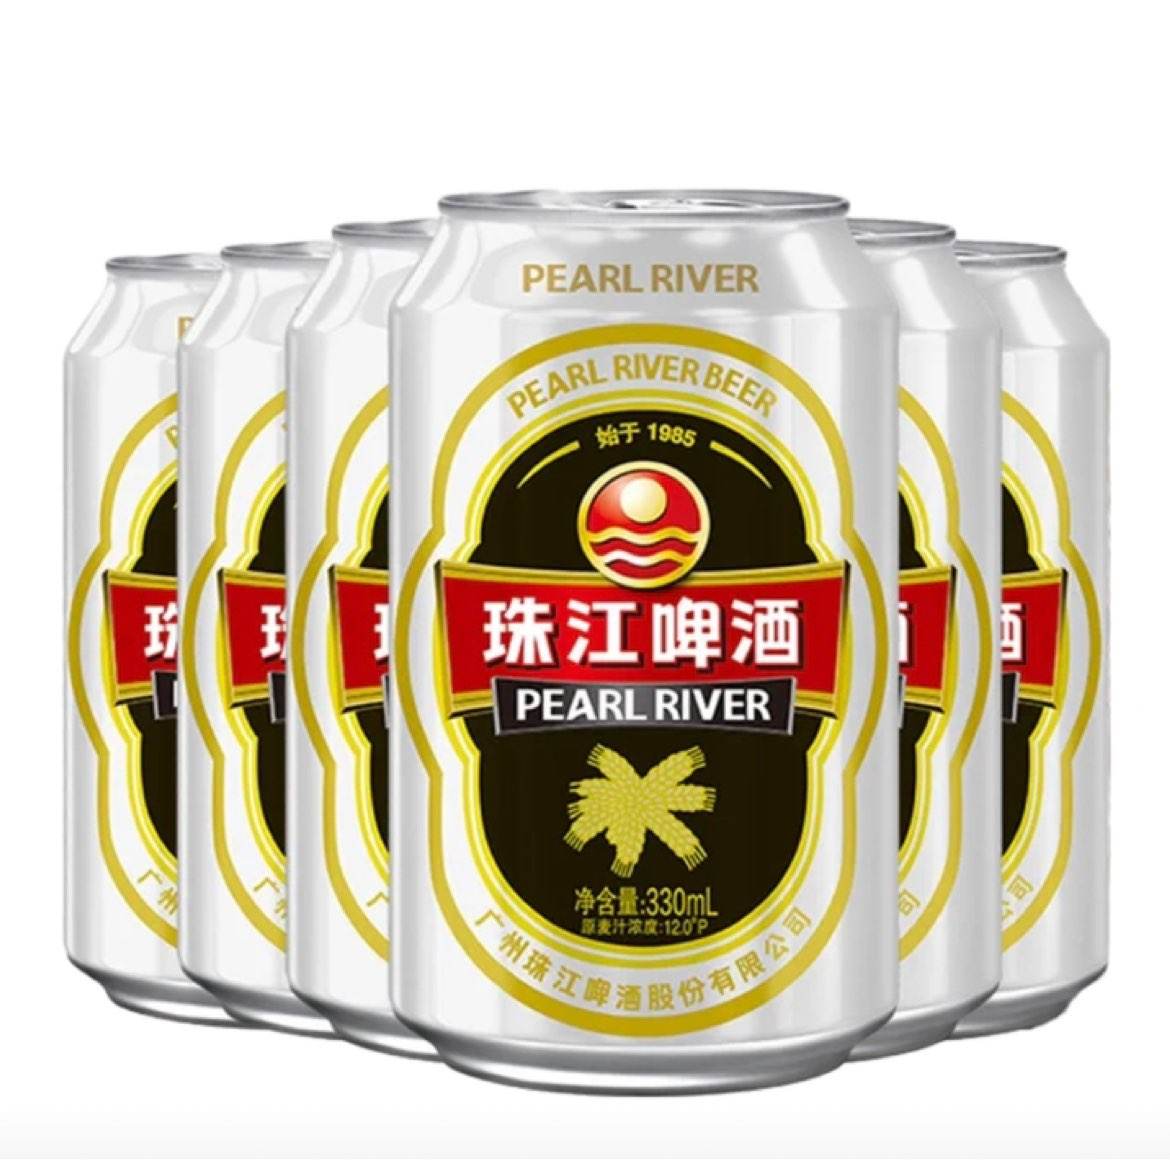 珠江啤酒 12度经典老珠江啤酒 330ml*6瓶 15.8元包邮